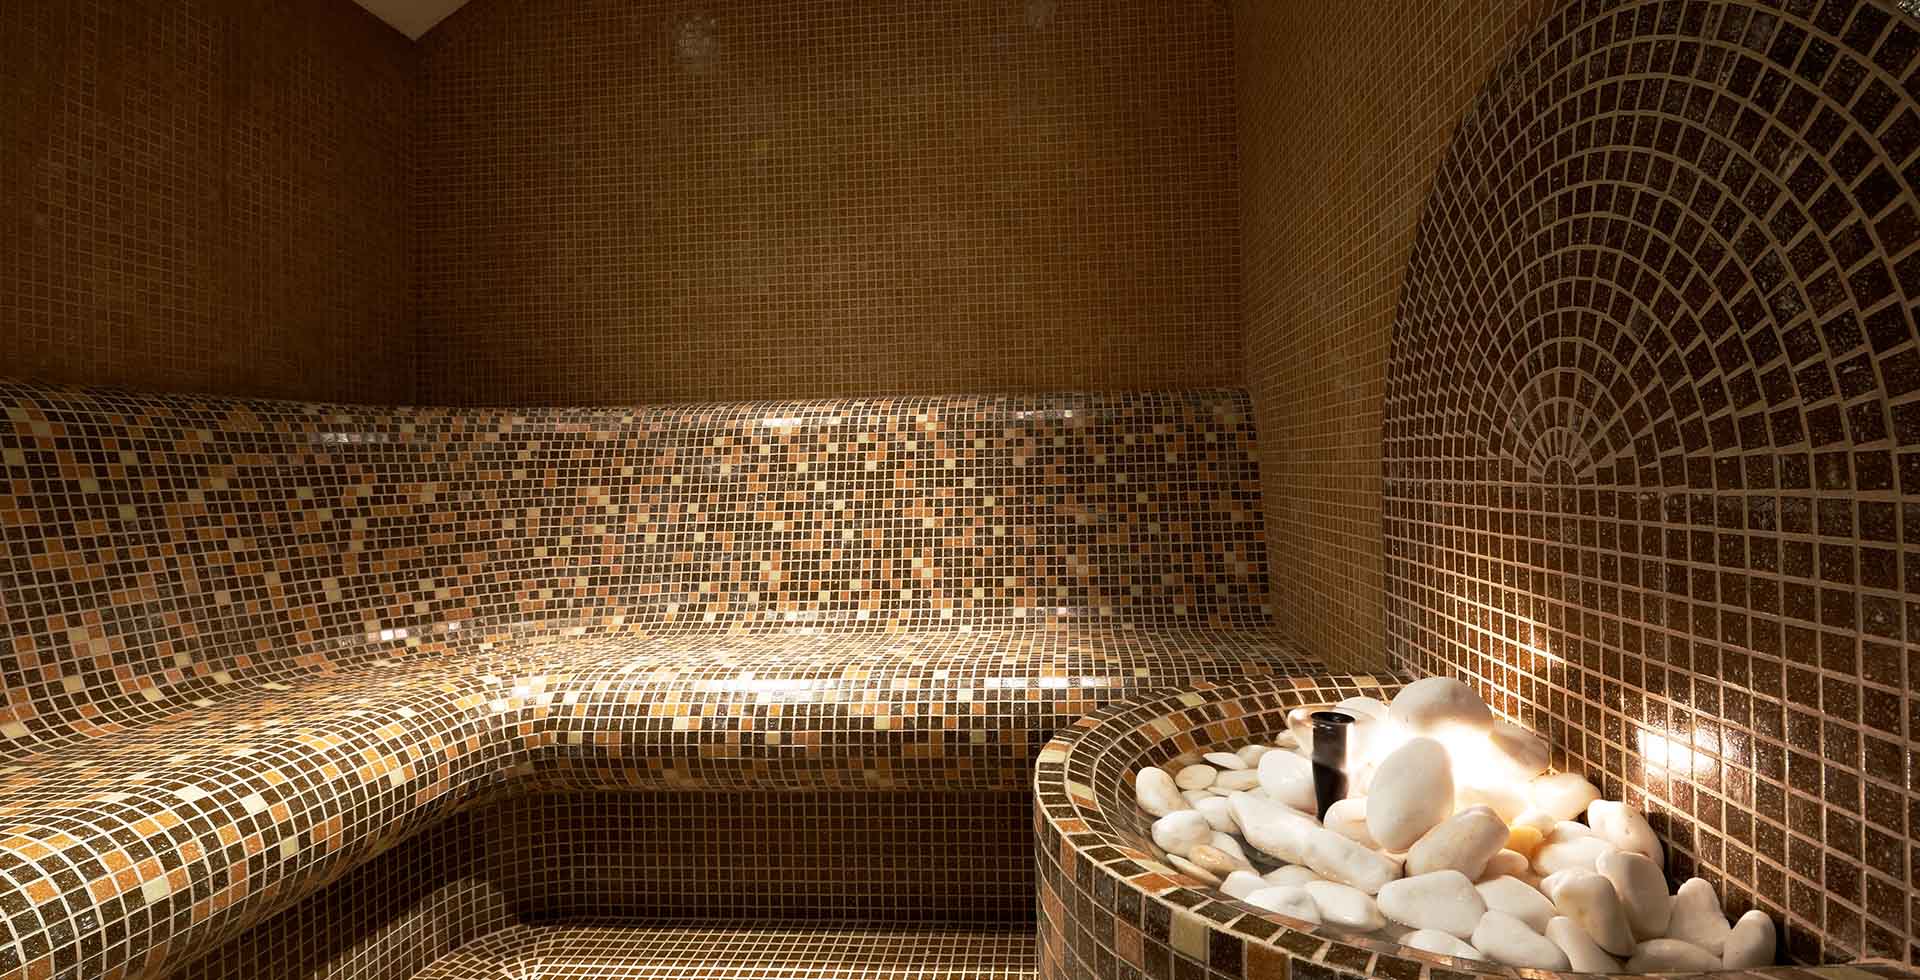 Schaffhausen Dampfbad: Crafted Steam Bath Artistry and Opulent Design